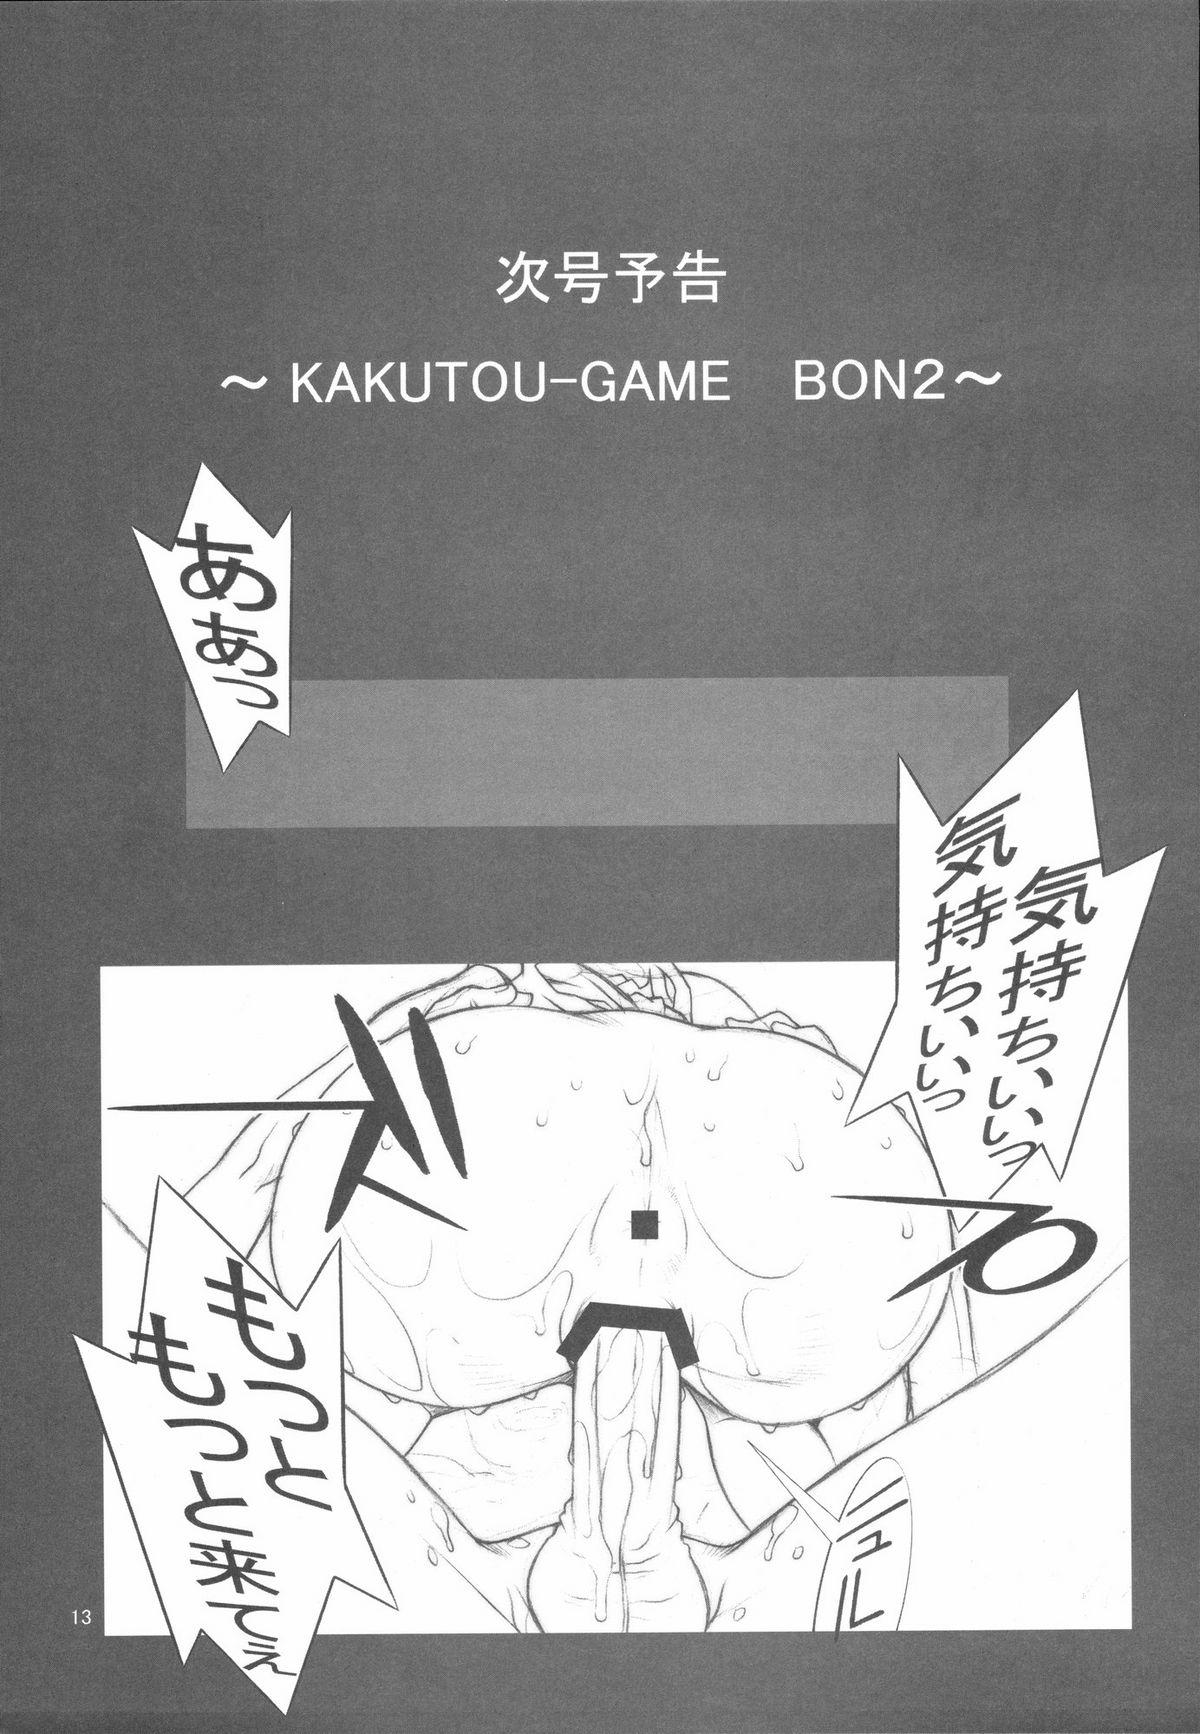 KAKUTOU-GAME BON 13